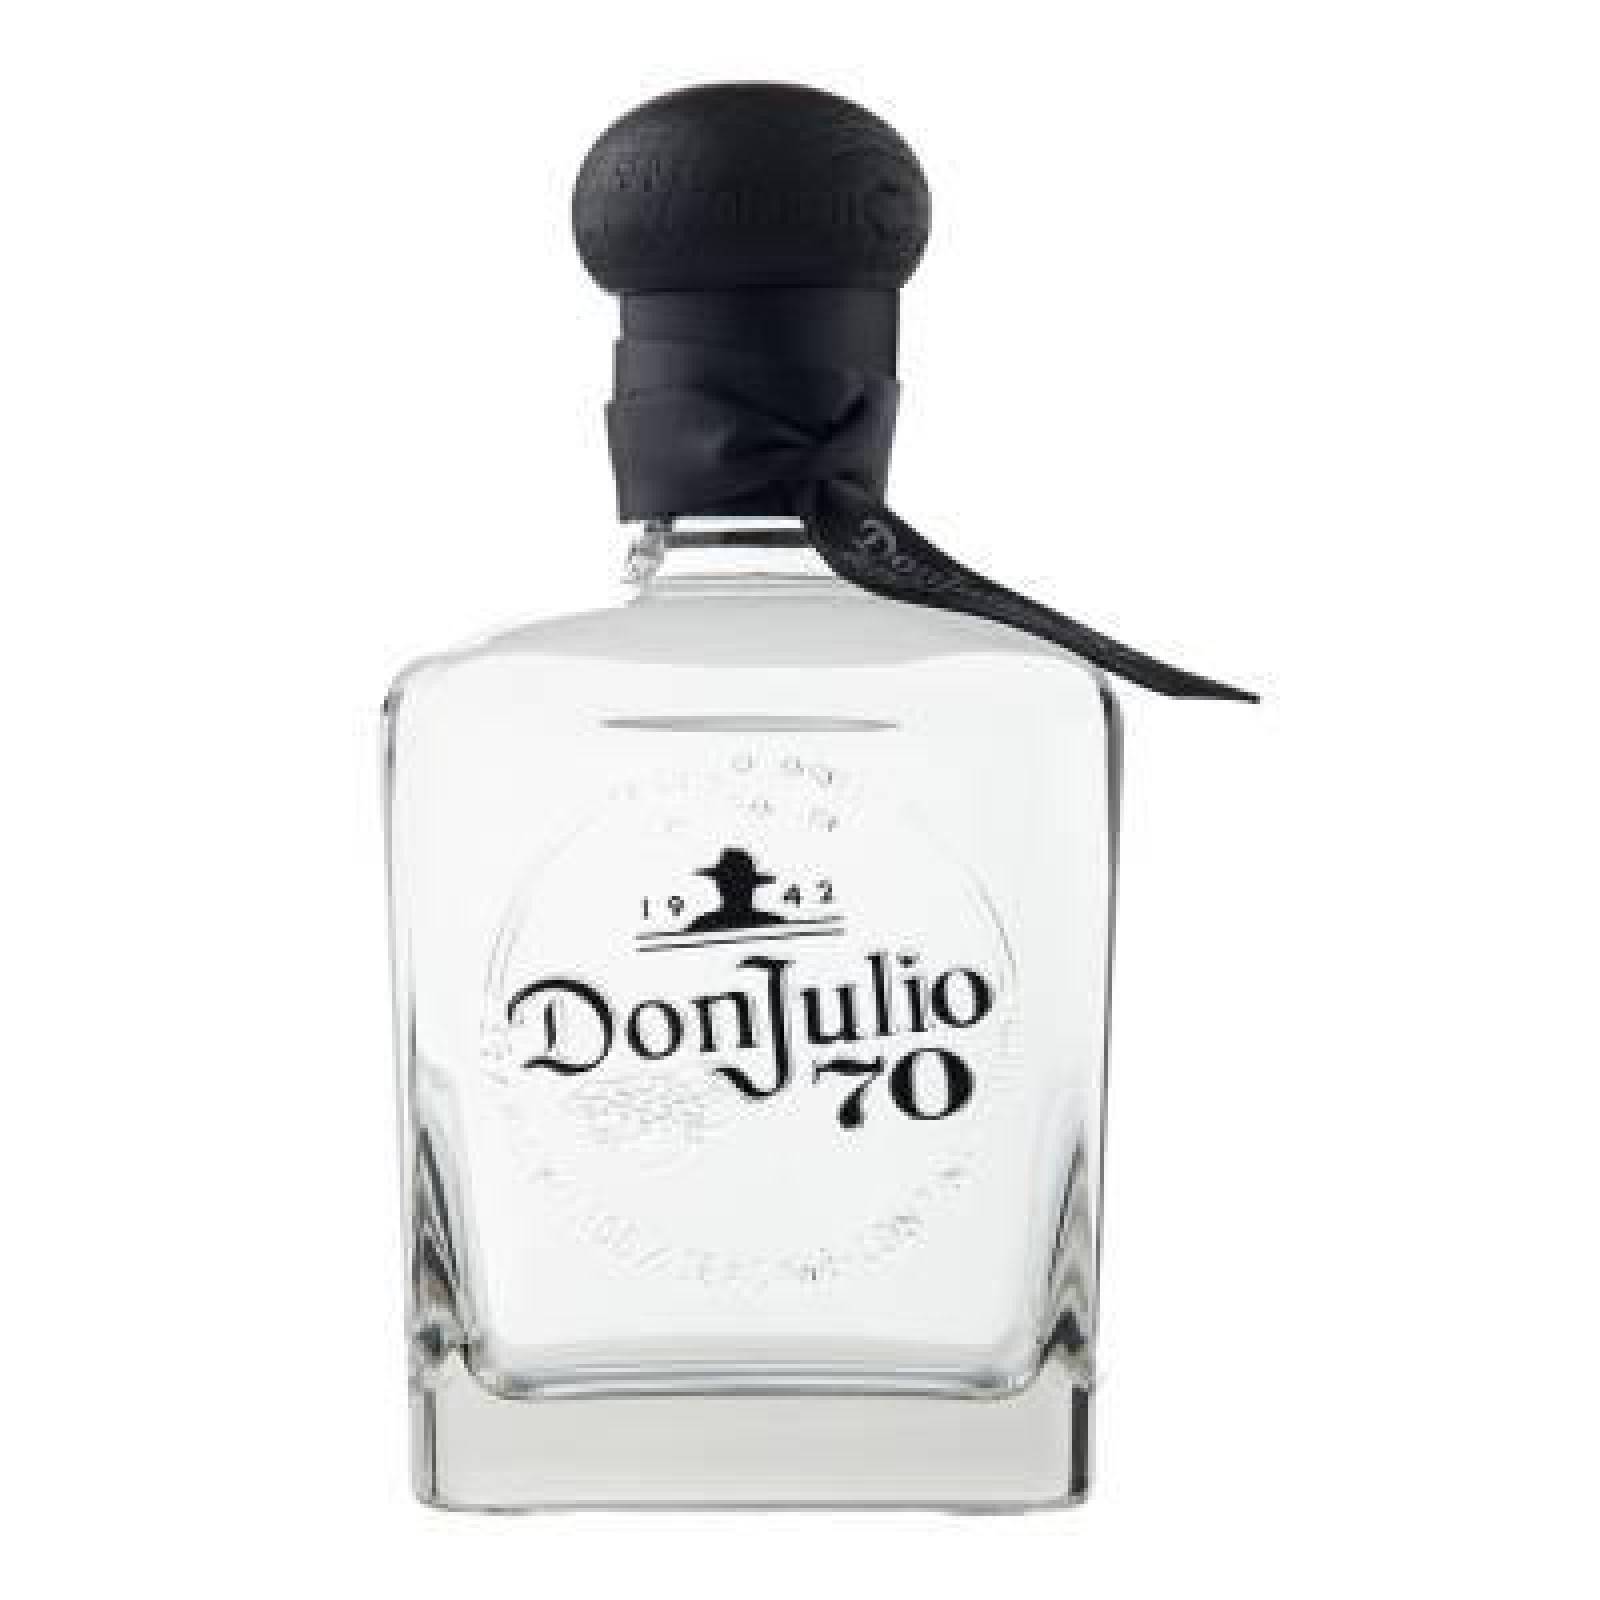 Don Julio Tequila 70 Añejo Cristalino botella 700ml 